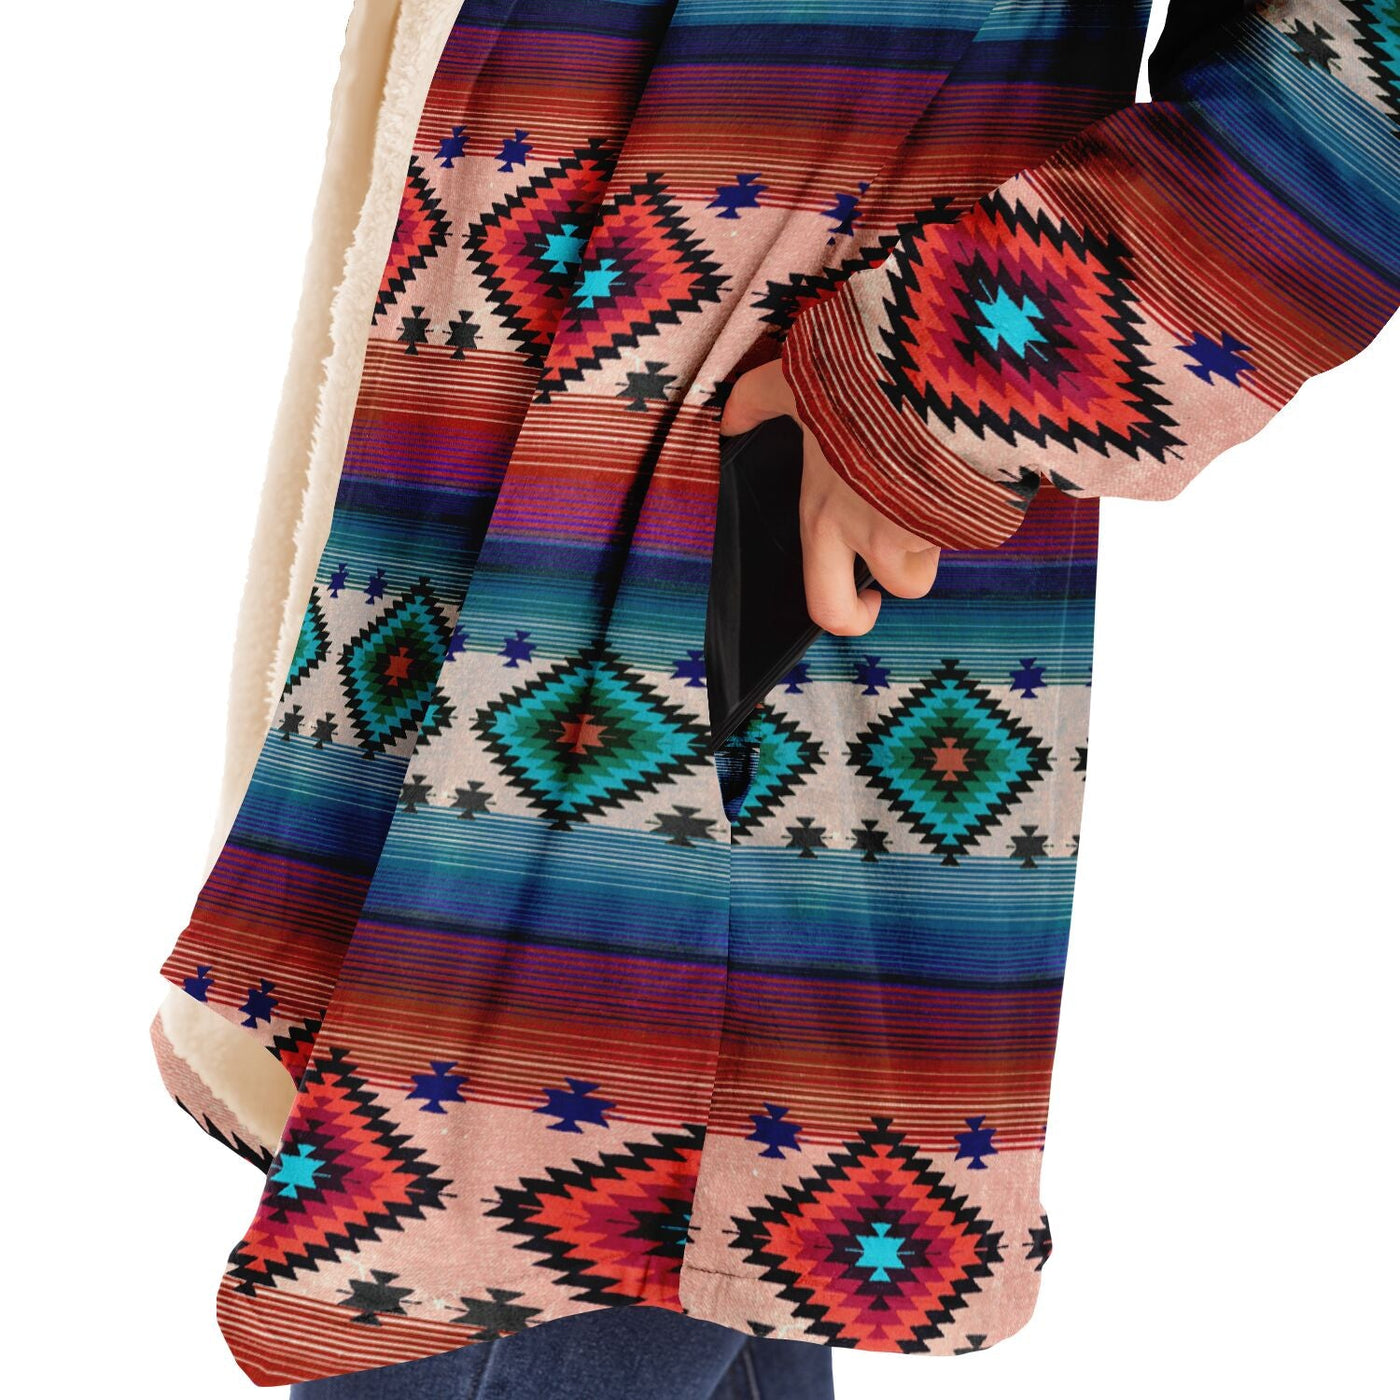 Funky Shaman Blue Beige | Native American Hooded Cloak